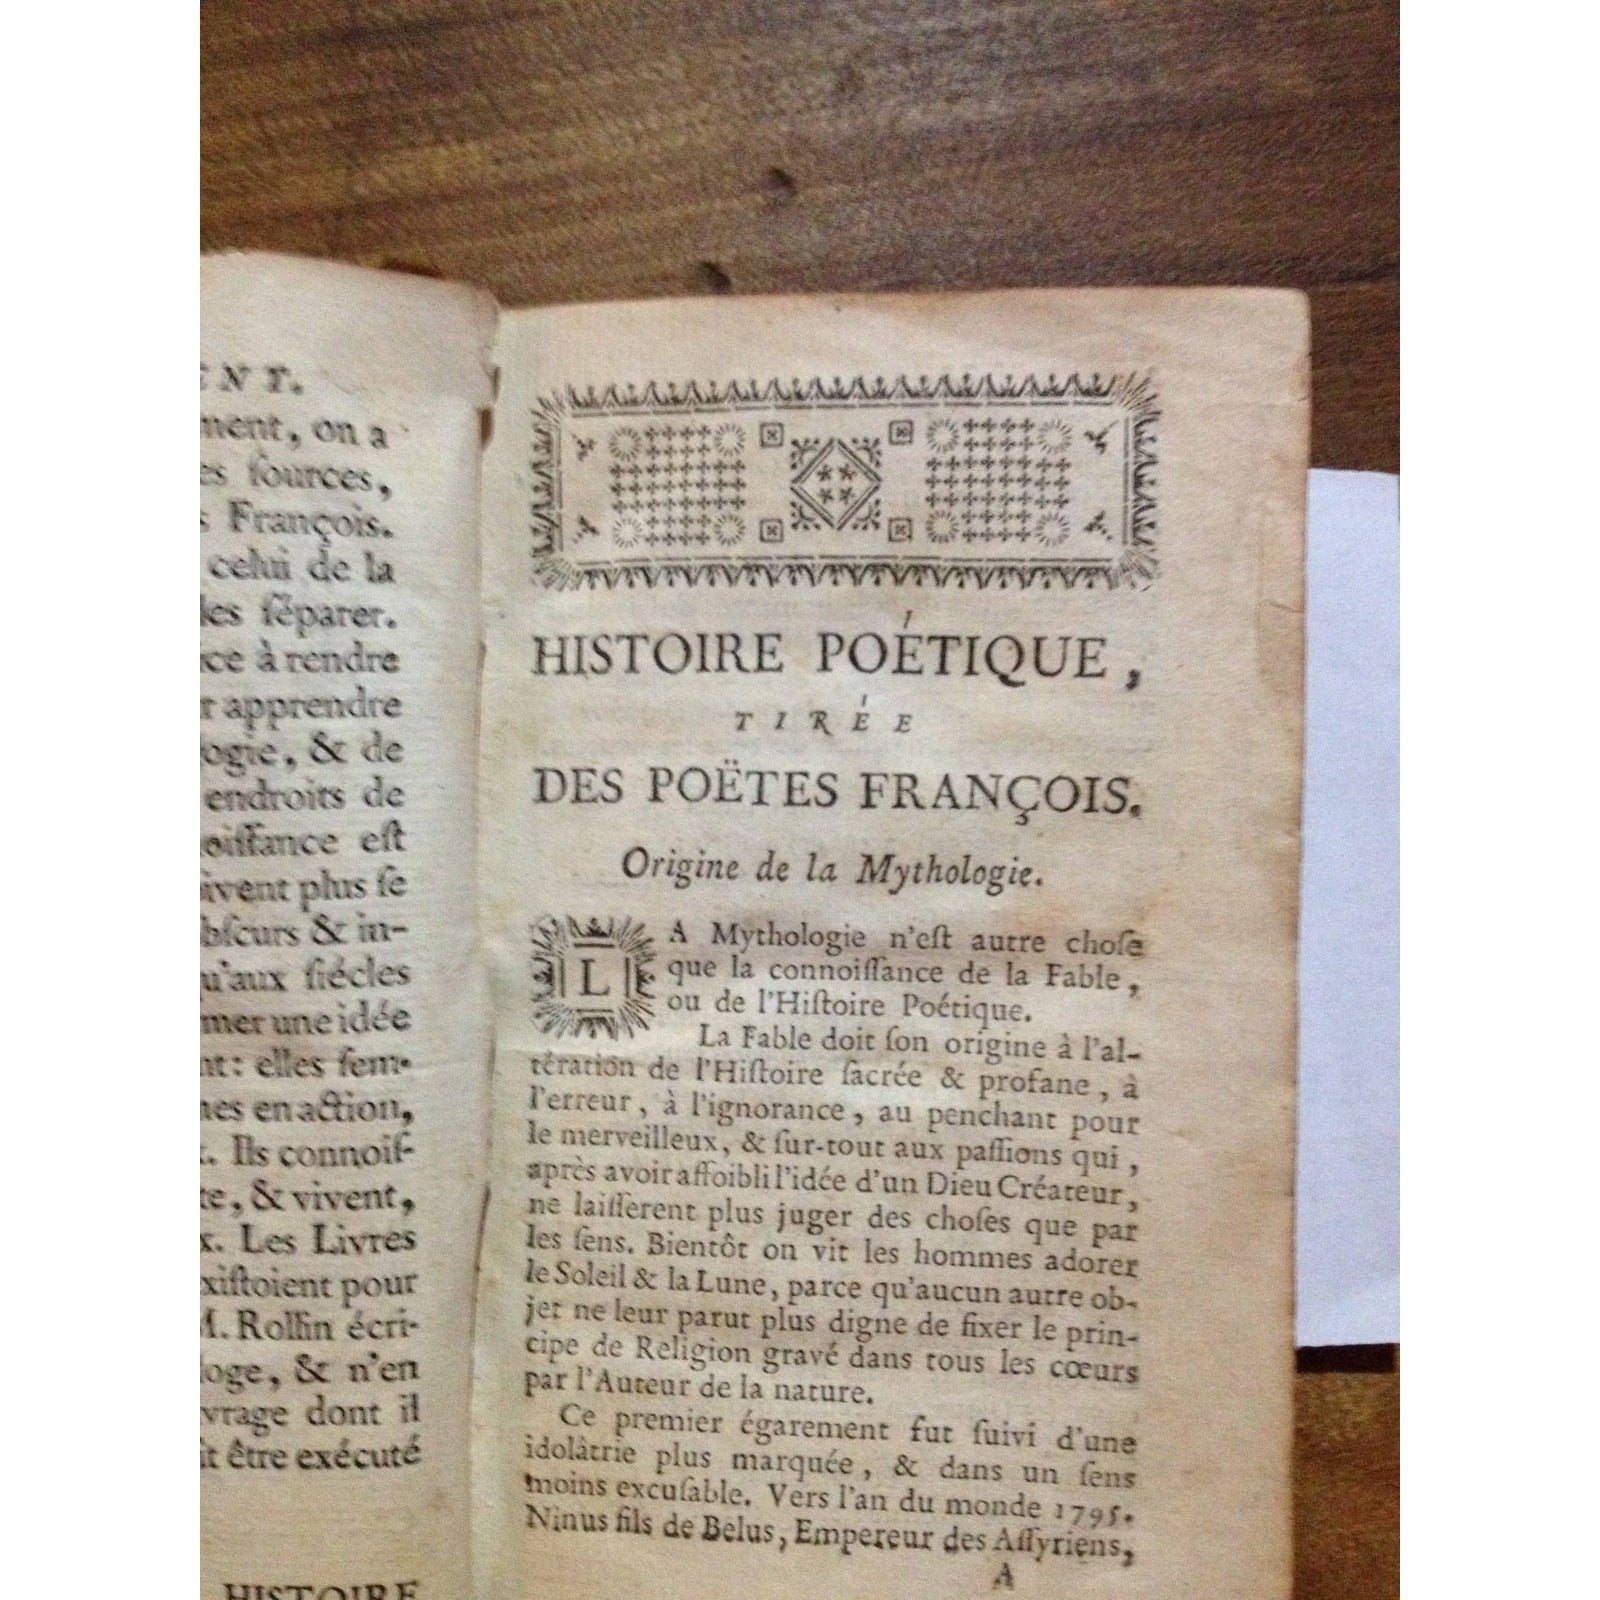 HISTOIRE POETIQUE DES POETES FRANCIAUS BY: M. L'ABE GUILLAUME BERTOUX BooksCardsNBikes